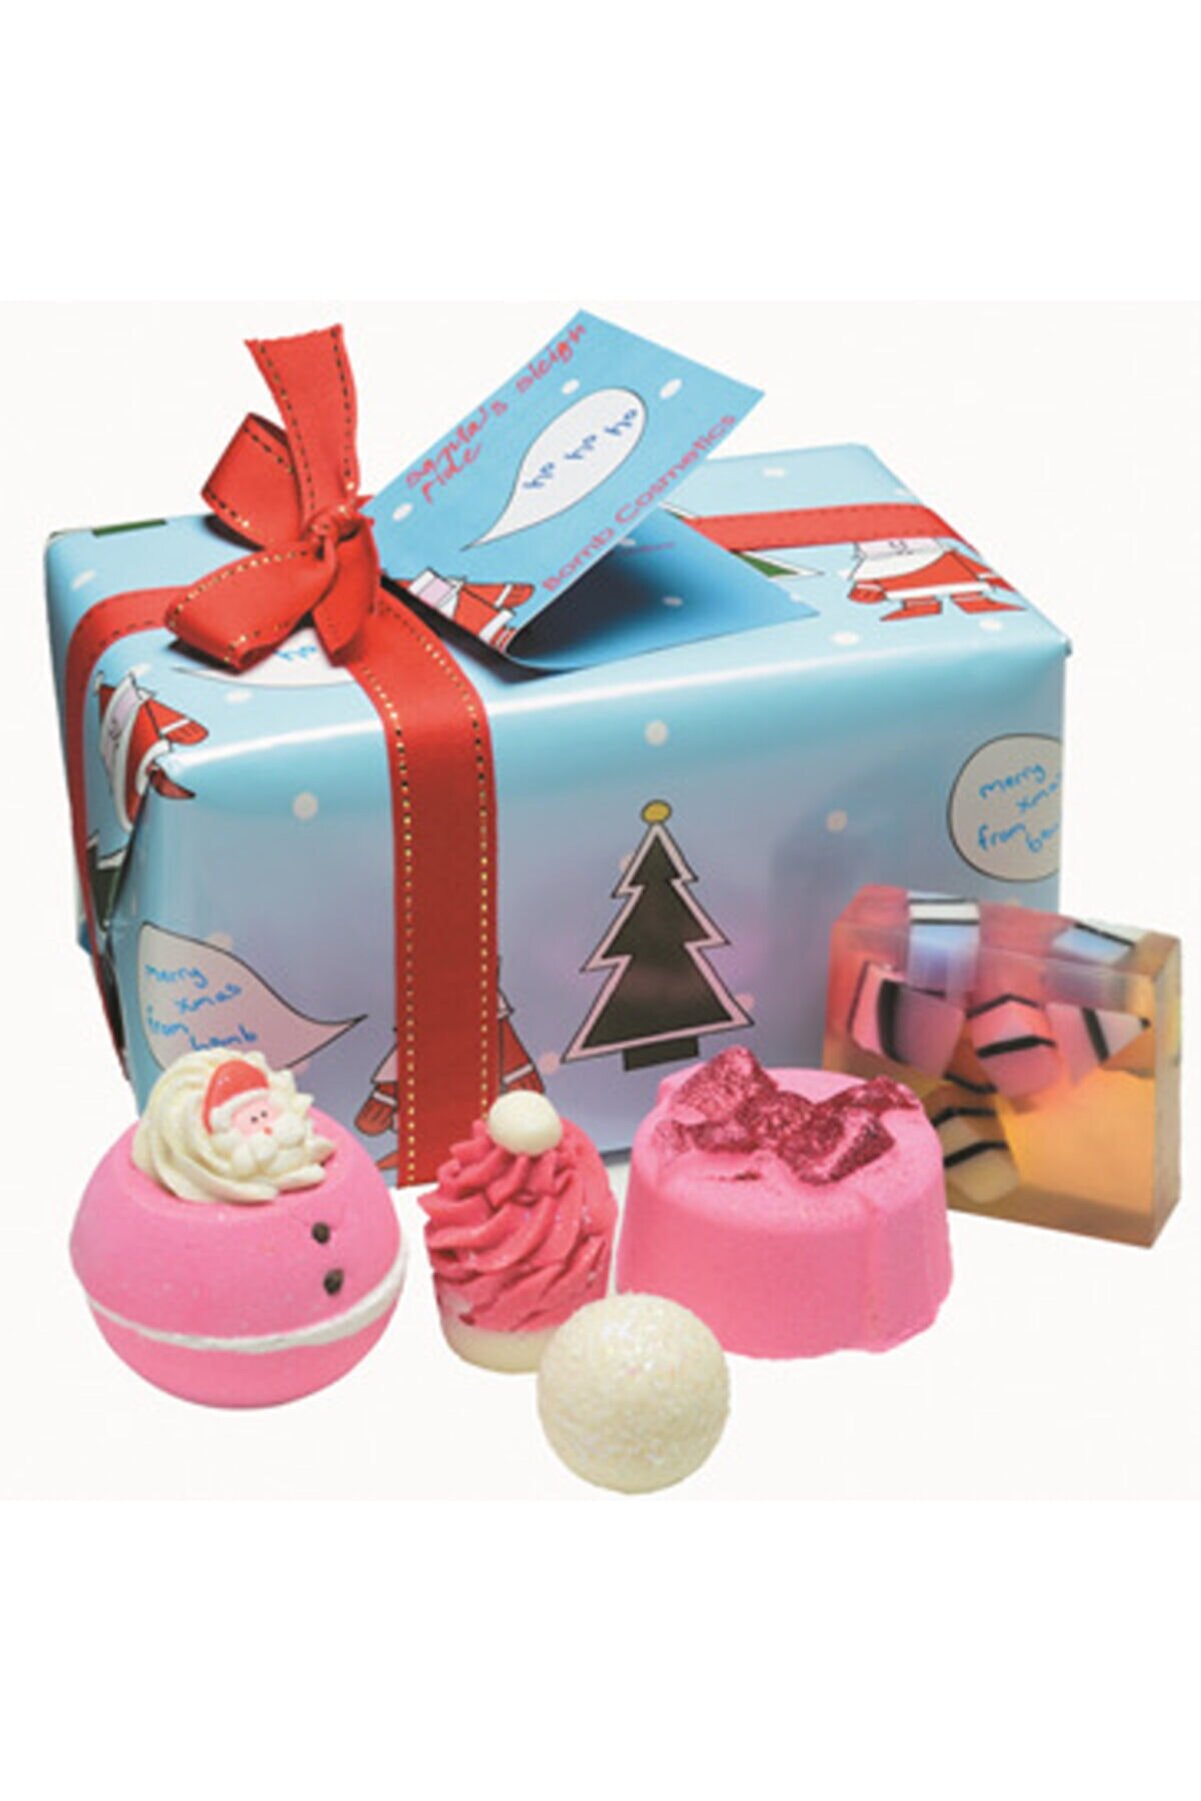 Bomb Cosmetics Santa's Sleigh Ride Hediye Paketi